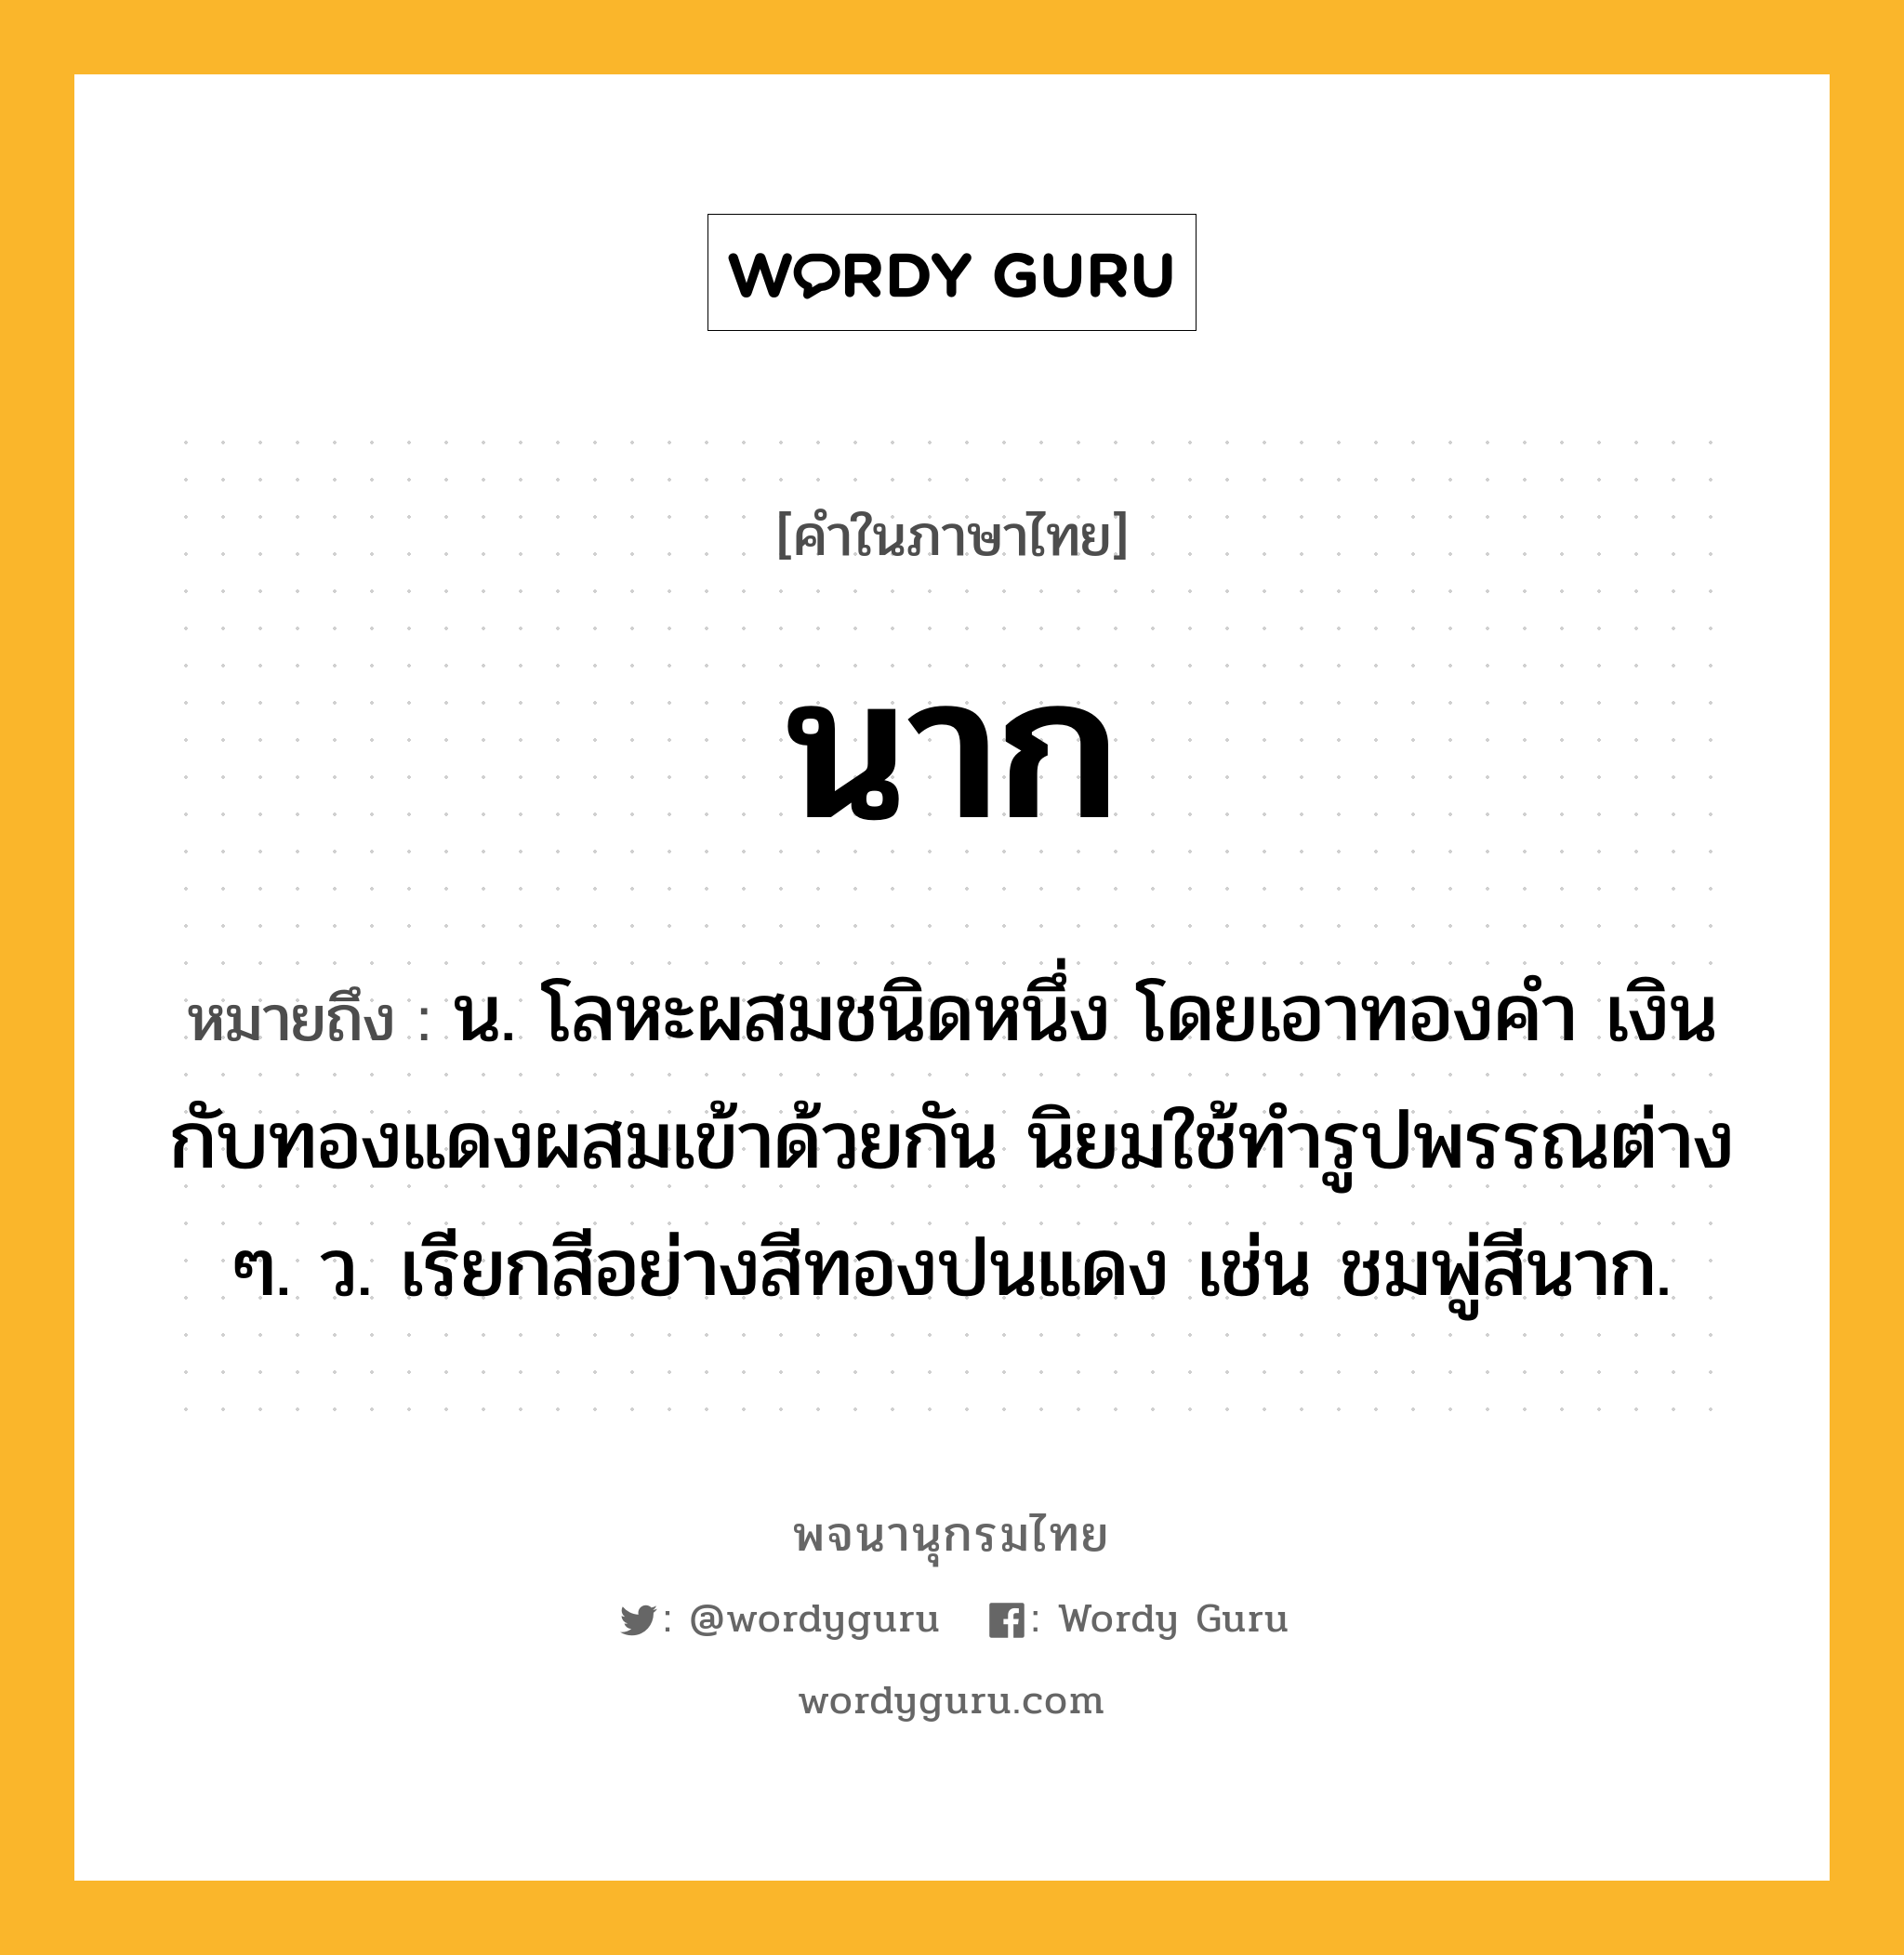 นาก ความหมาย หมายถึงอะไร?, คำในภาษาไทย นาก หมายถึง น. โลหะผสมชนิดหนึ่ง โดยเอาทองคํา เงิน กับทองแดงผสมเข้าด้วยกัน นิยมใช้ทํารูปพรรณต่าง ๆ. ว. เรียกสีอย่างสีทองปนแดง เช่น ชมพู่สีนาก.